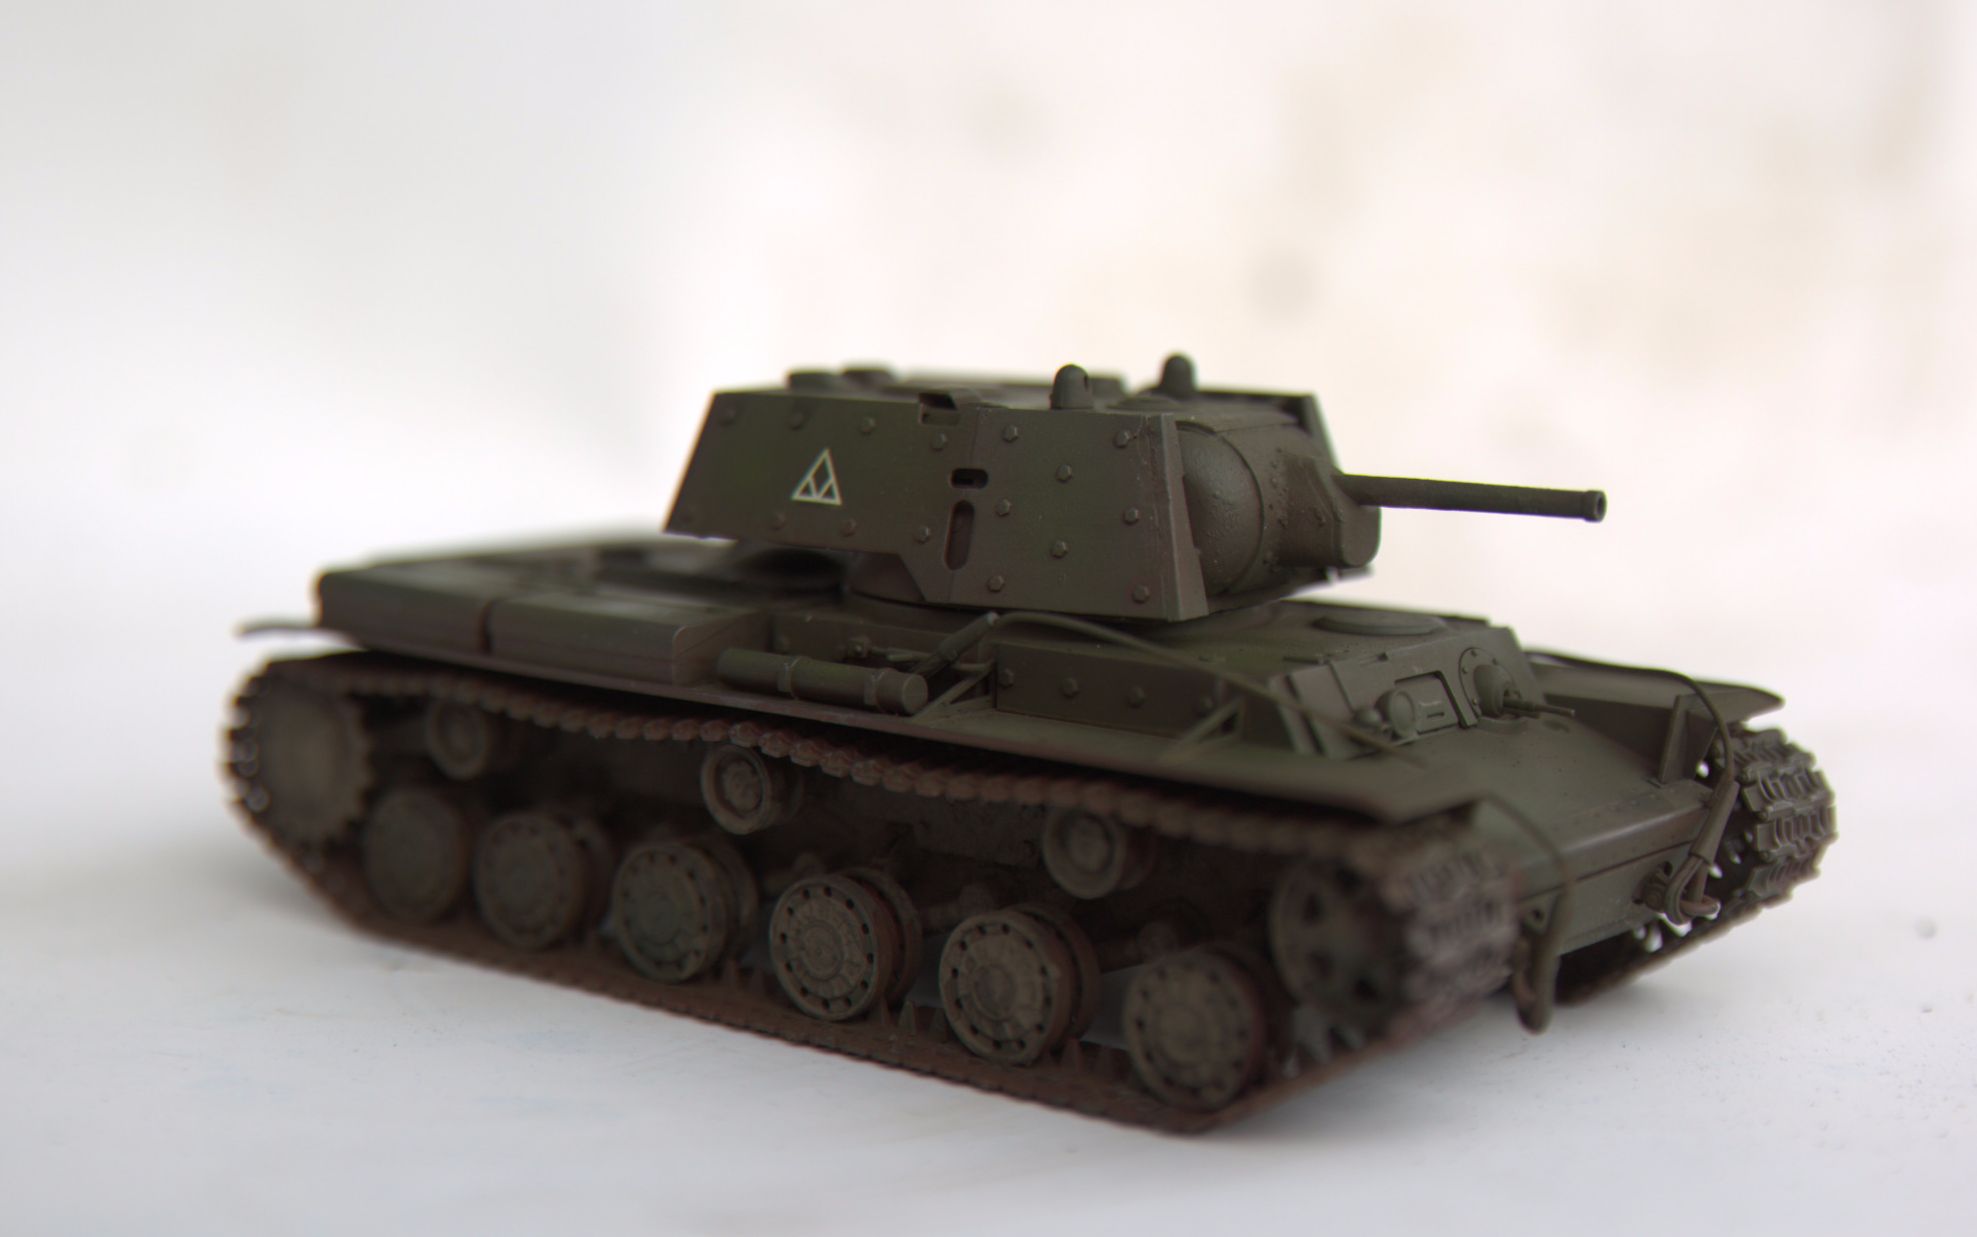 【大模型校长】全程解说加字幕,田宫苏联重型坦克kv1模型制作流程